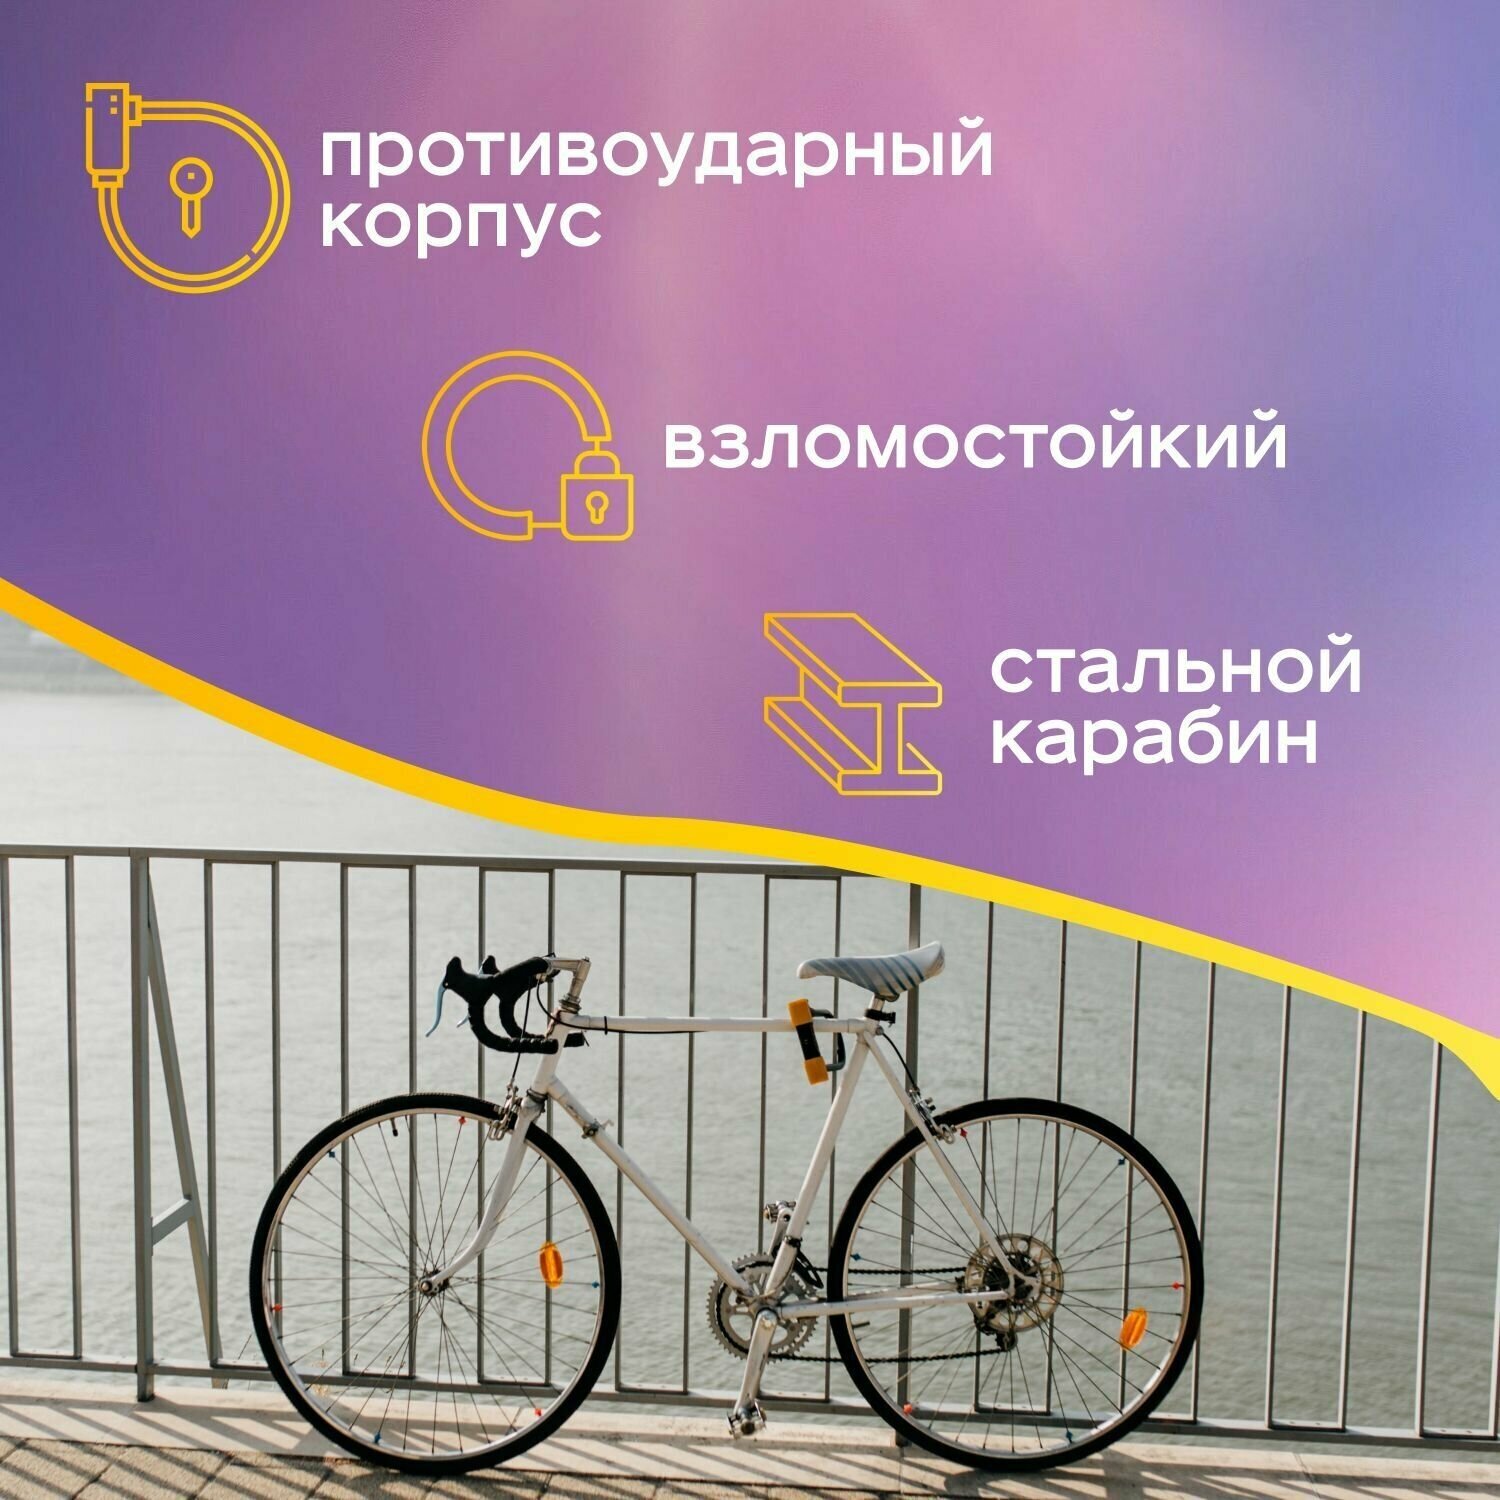 Надежный кодовый тросовый замок Четыре Сезона длиной 100 см для велосипеда и коляски